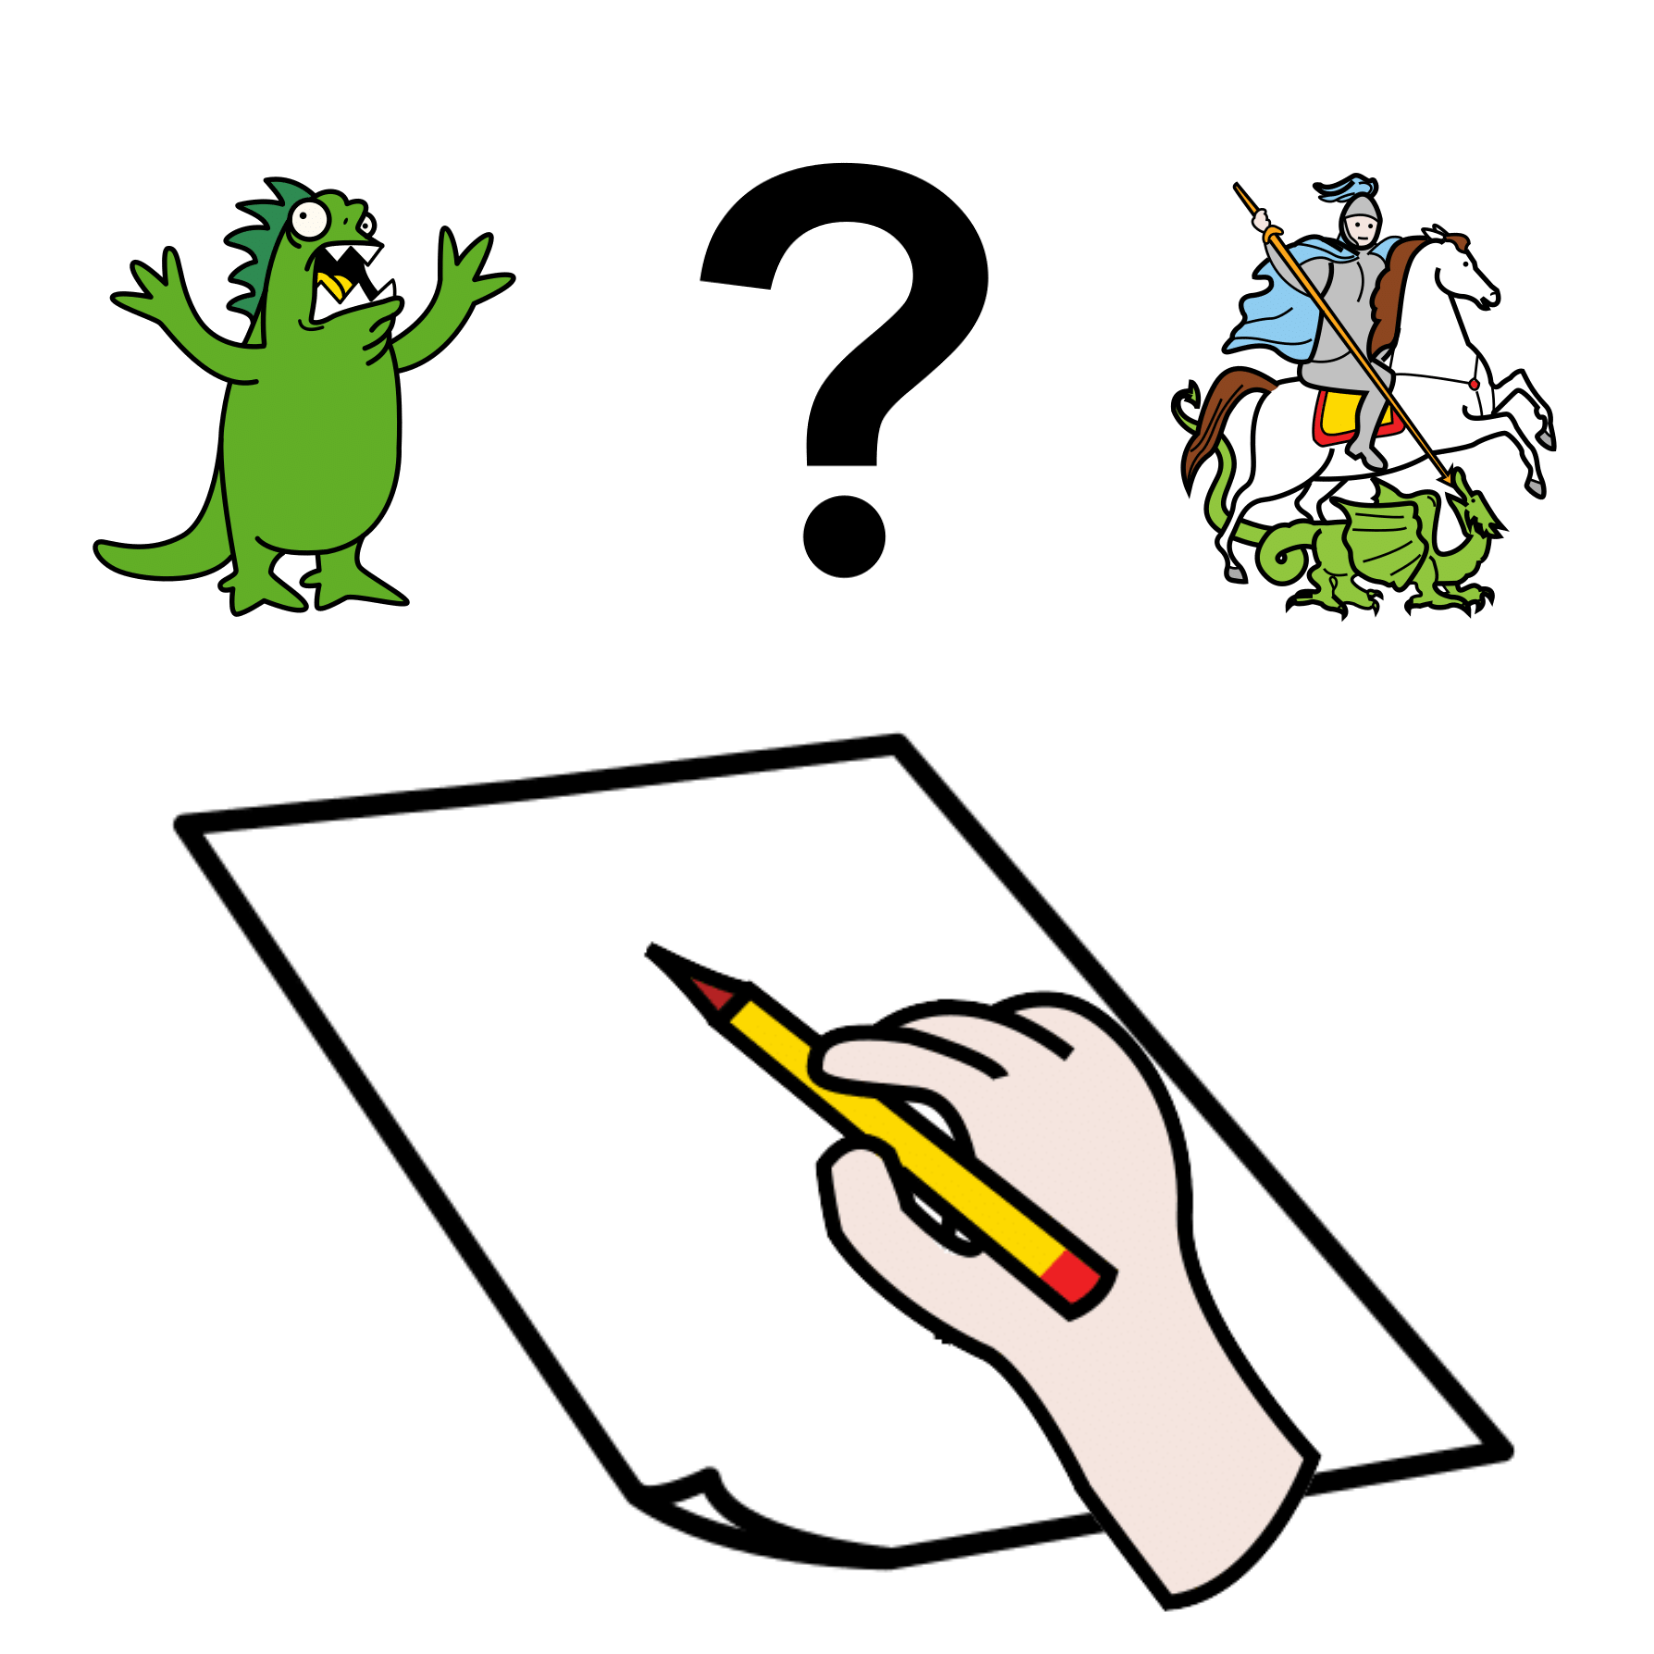 Pictograma de papel en blanco y una mano sujetando un lápiz, encima hay un signo de interrogación y dos opciones: un monstruo y un caballero luchando con un dragón.